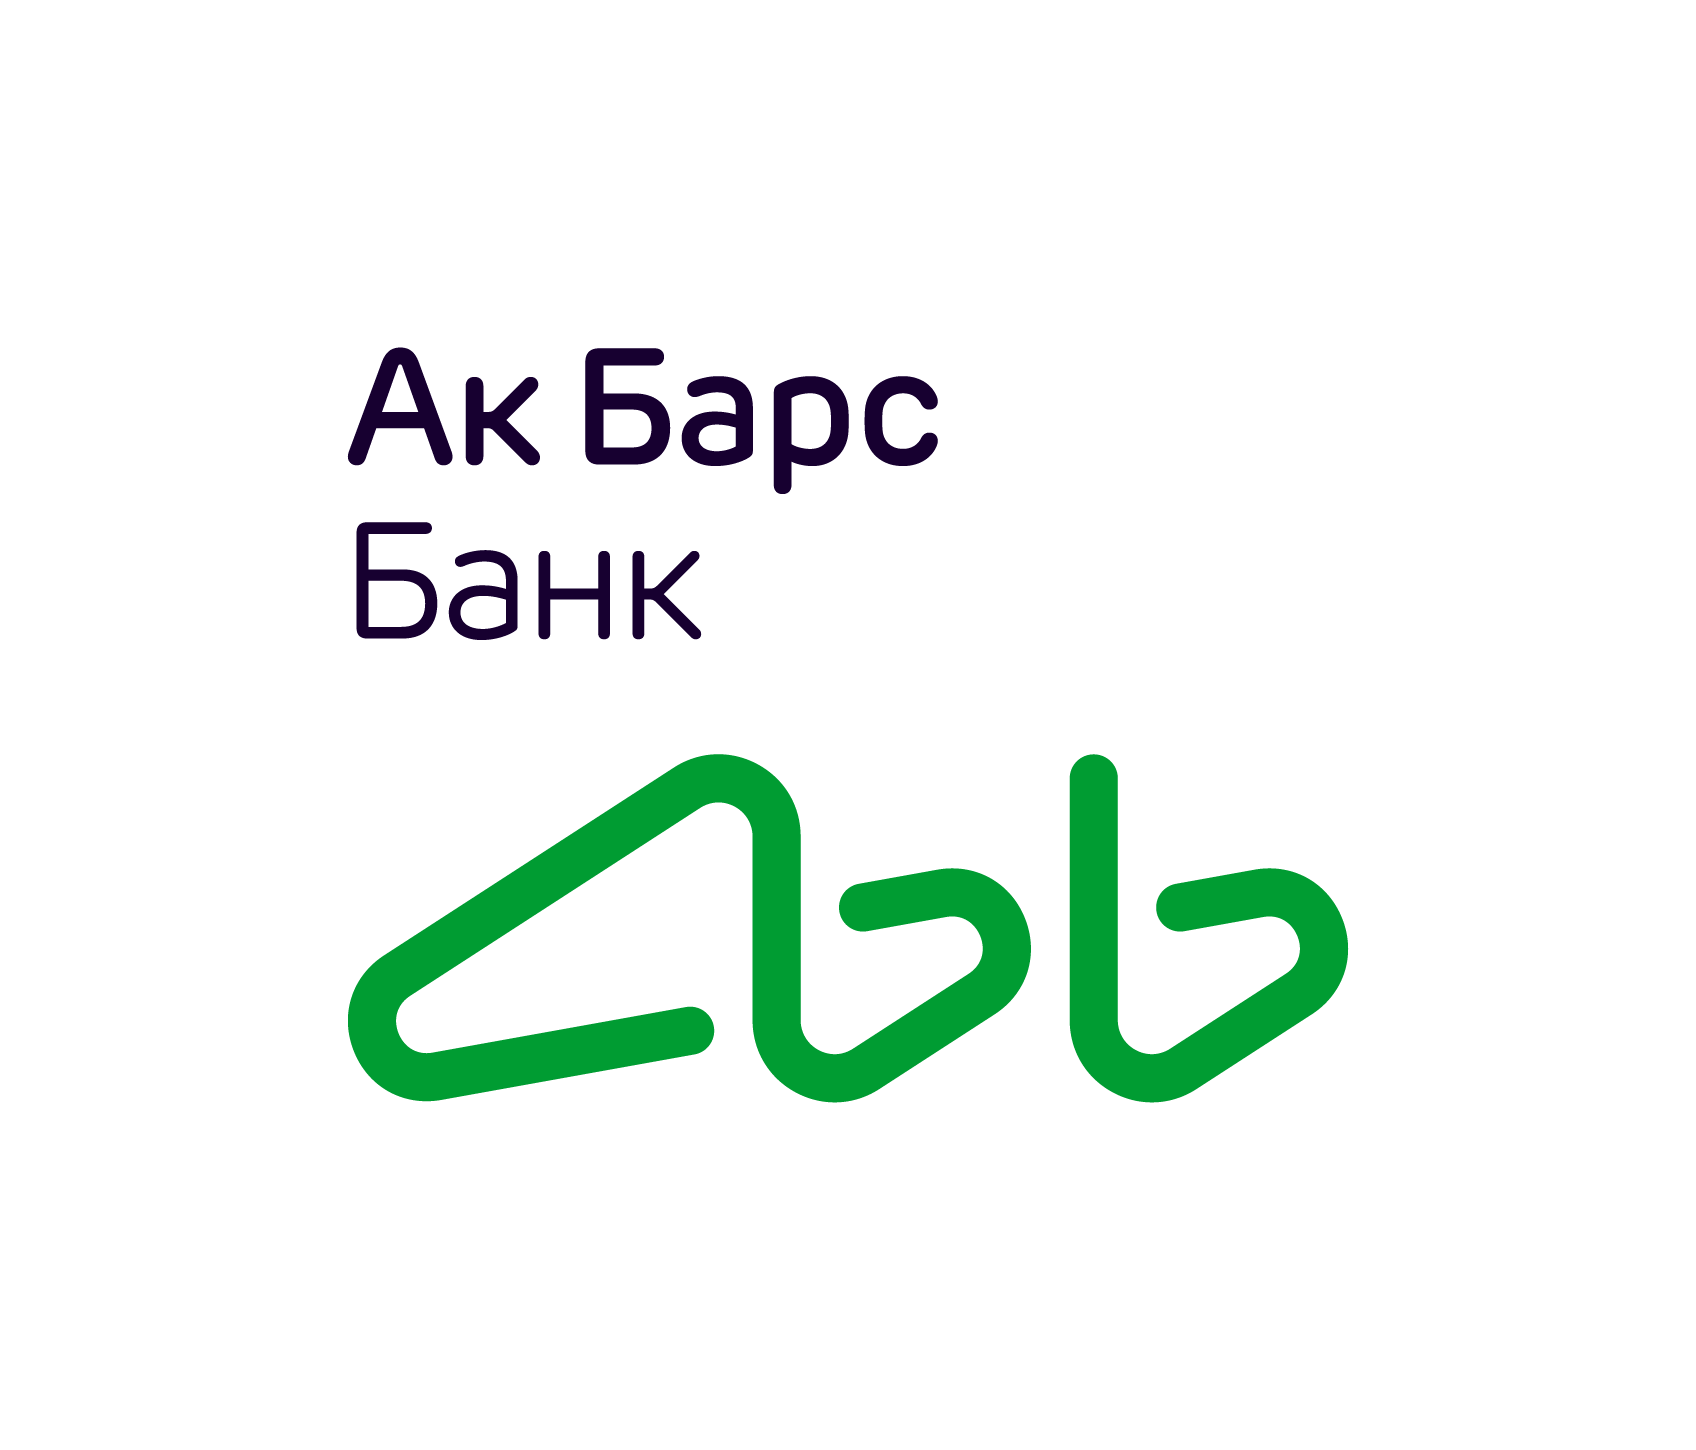 Ак барс банк новый. АК Барс банк лого. АК Барс банк логотип 2021. АК Барс страхование логотип. АКБАРС банк логотип новый.